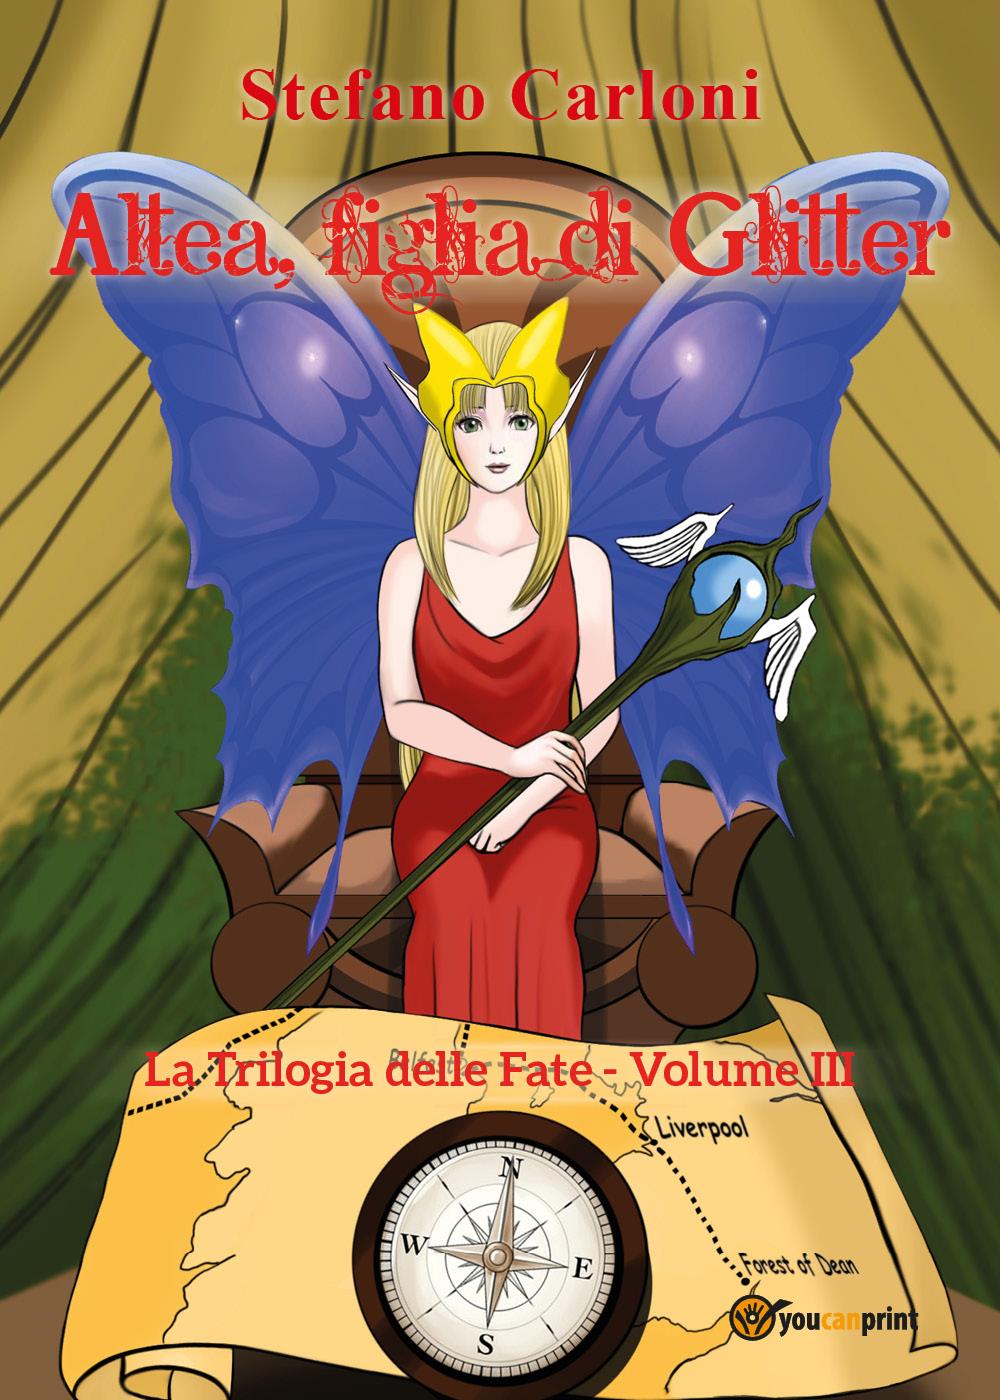 Altea, figlia di Glitter. La Trilogia delle Fate - Volume III